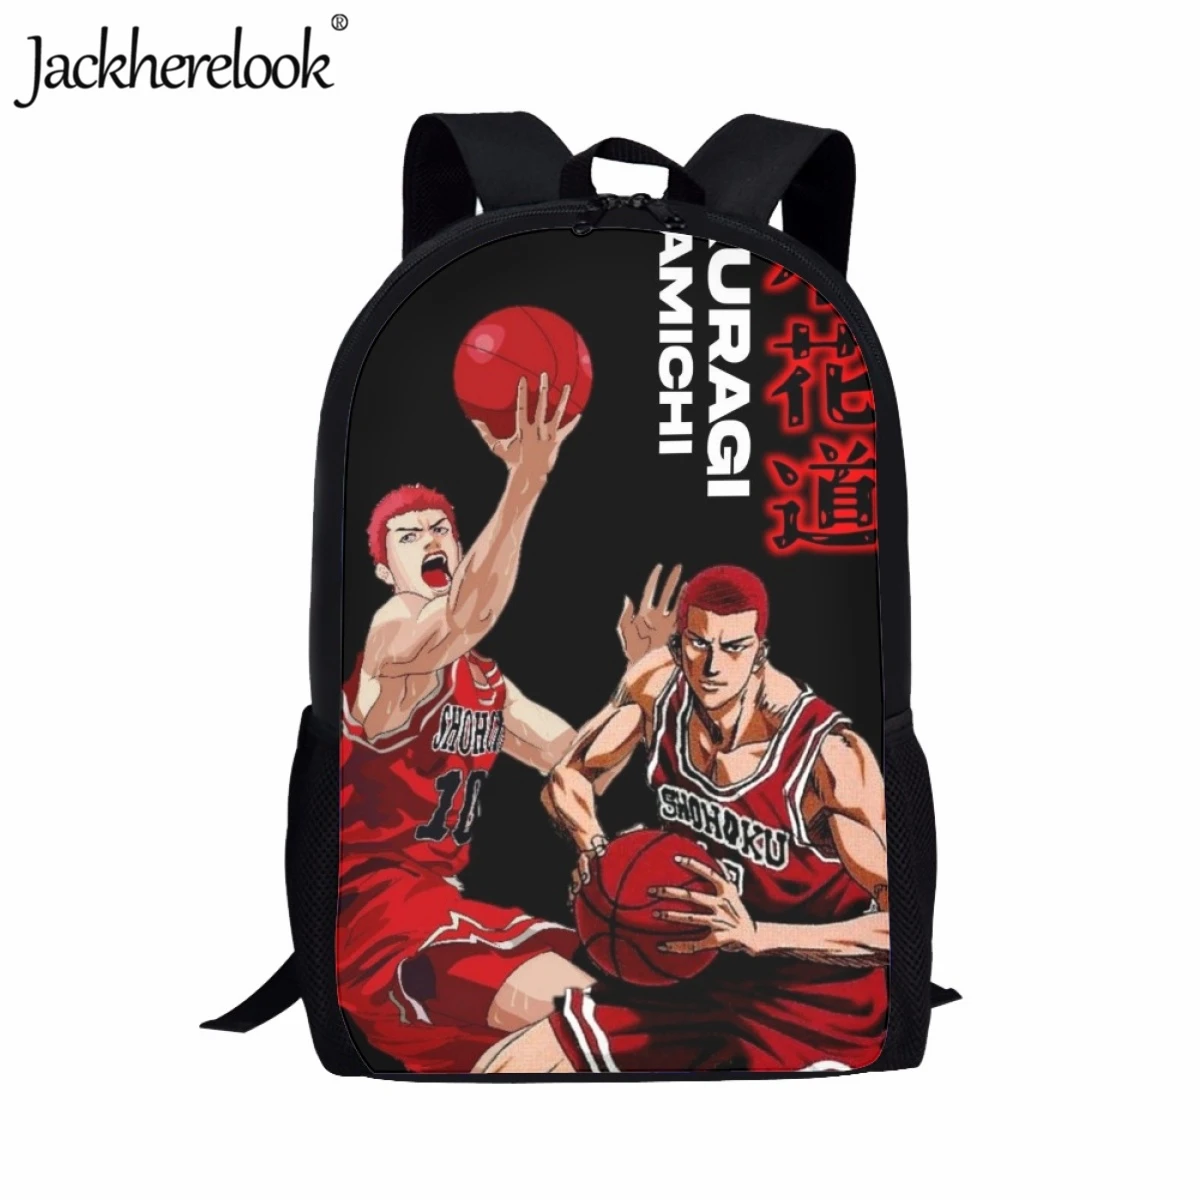 

Jackherelook японская аниме Slam Dunk Loves баскетбольная Сумка для подростков, практичная школьная сумка, вместительный дорожный рюкзак для мальчиков и девочек, сумка для книг